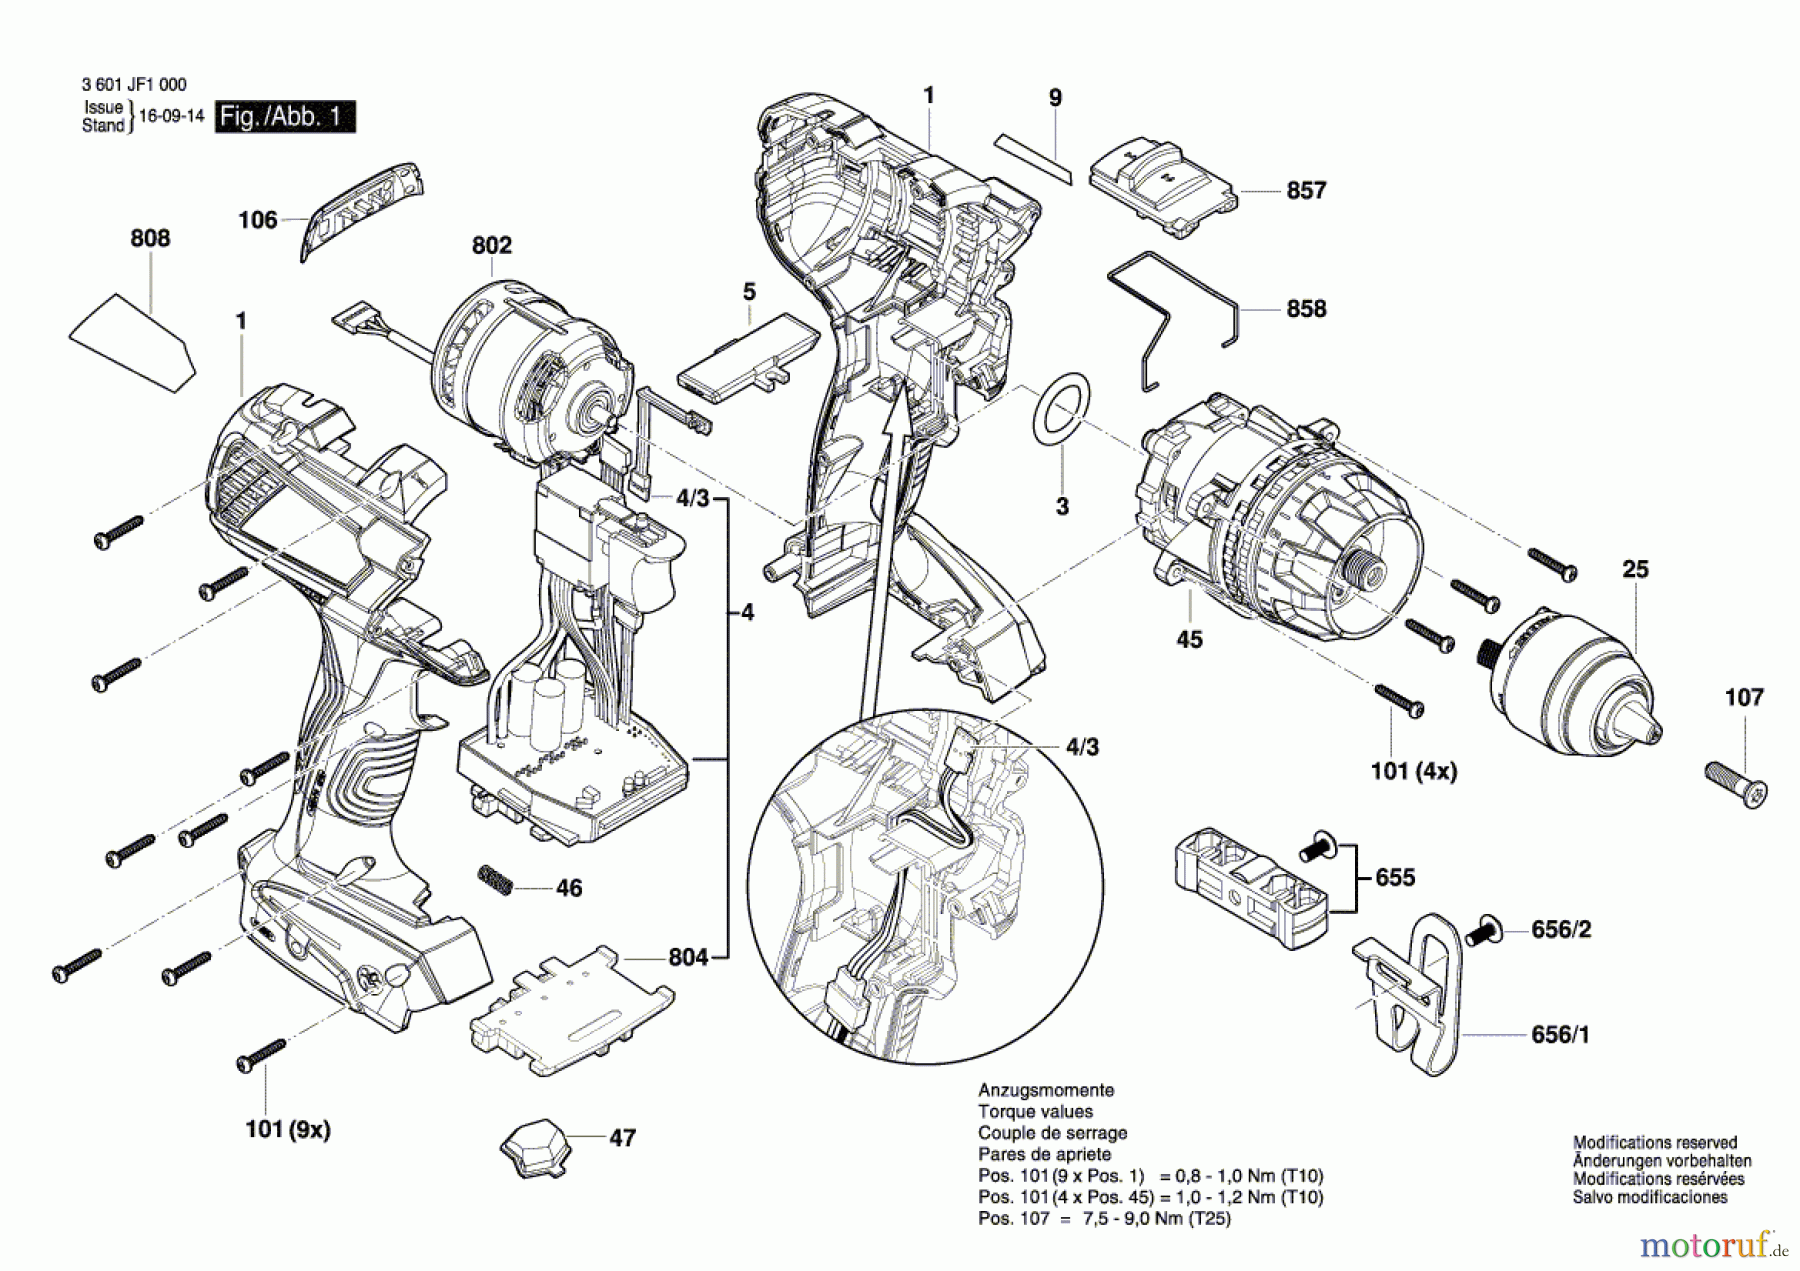  Bosch Akku Werkzeug Akku-Bohrschrauber GSR 14,4 VE-EC Seite 1